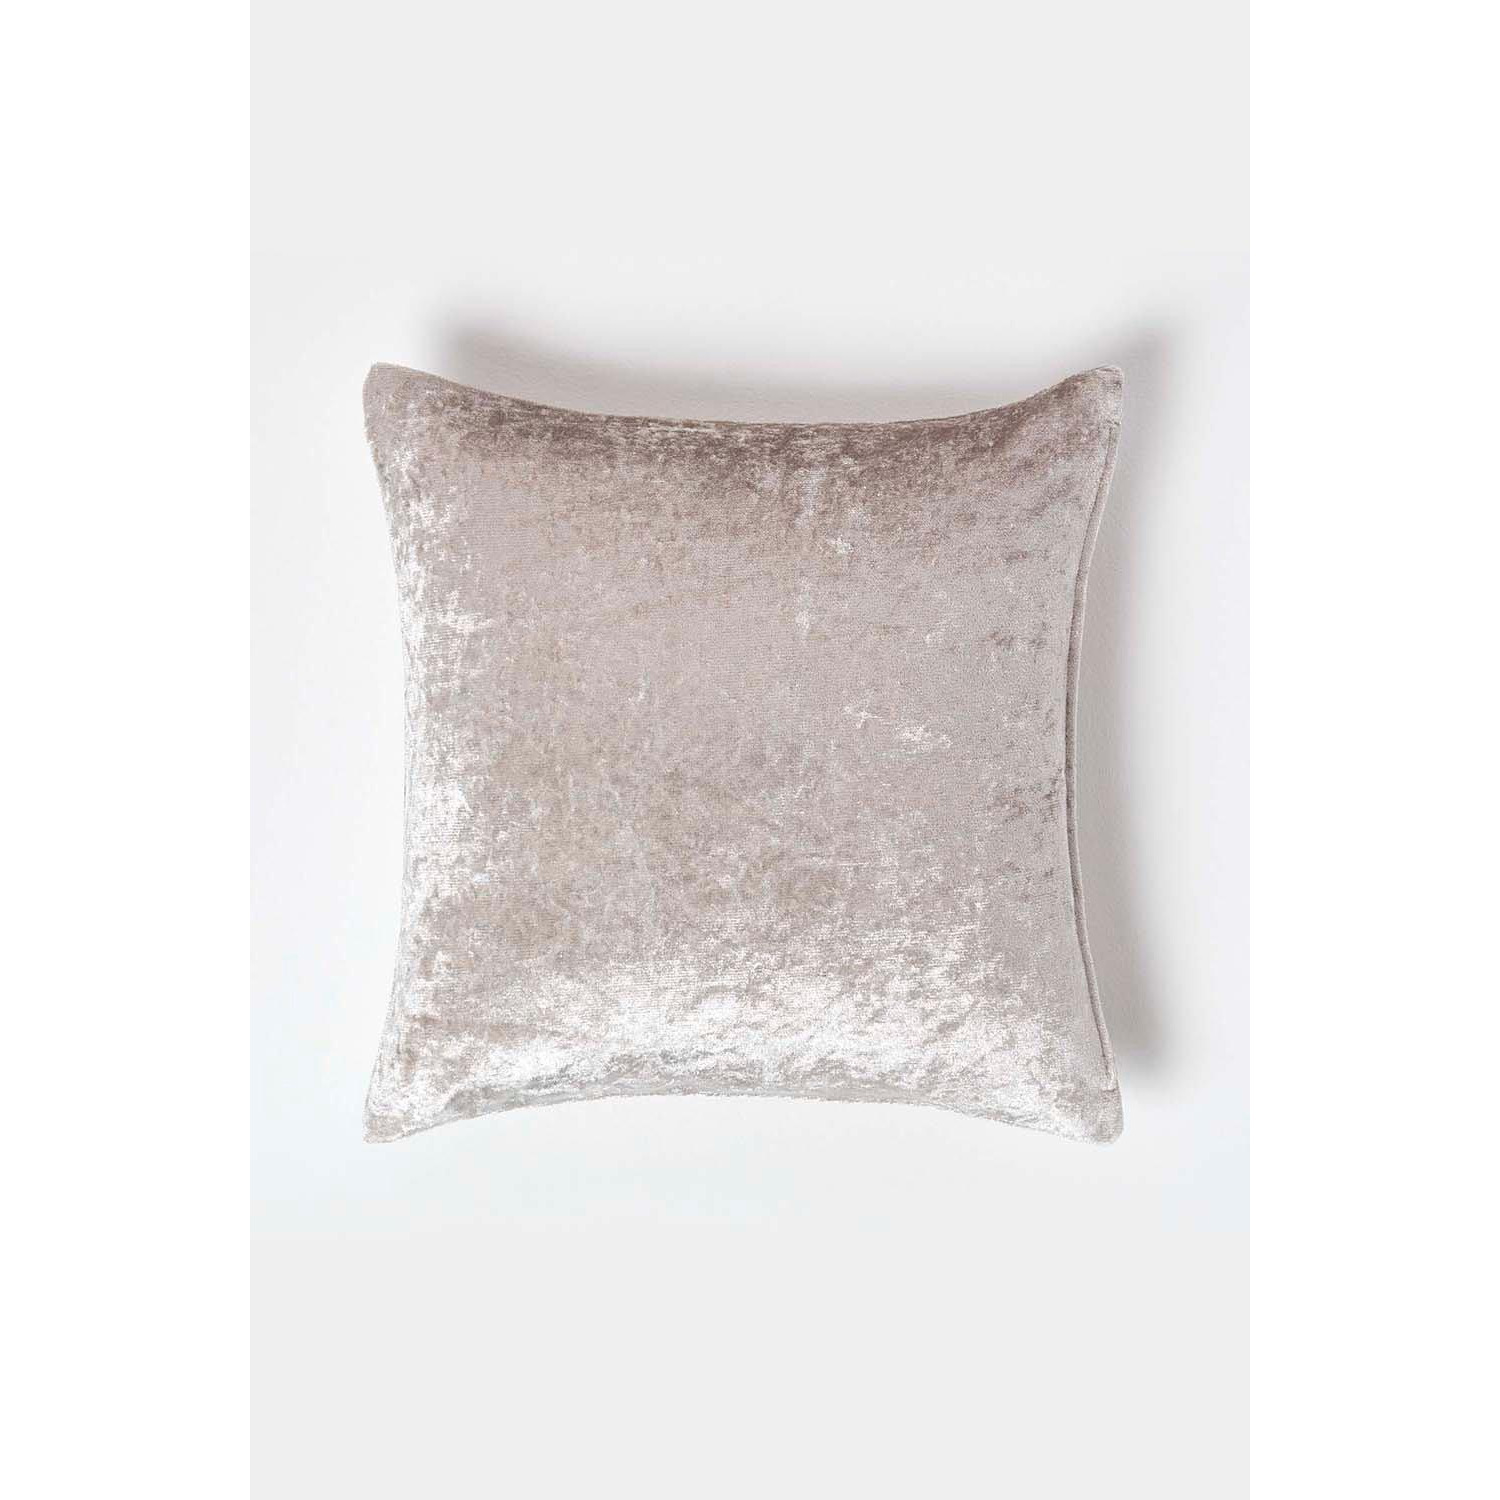 Luxury Crushed Velvet Cushion Cover - image 1